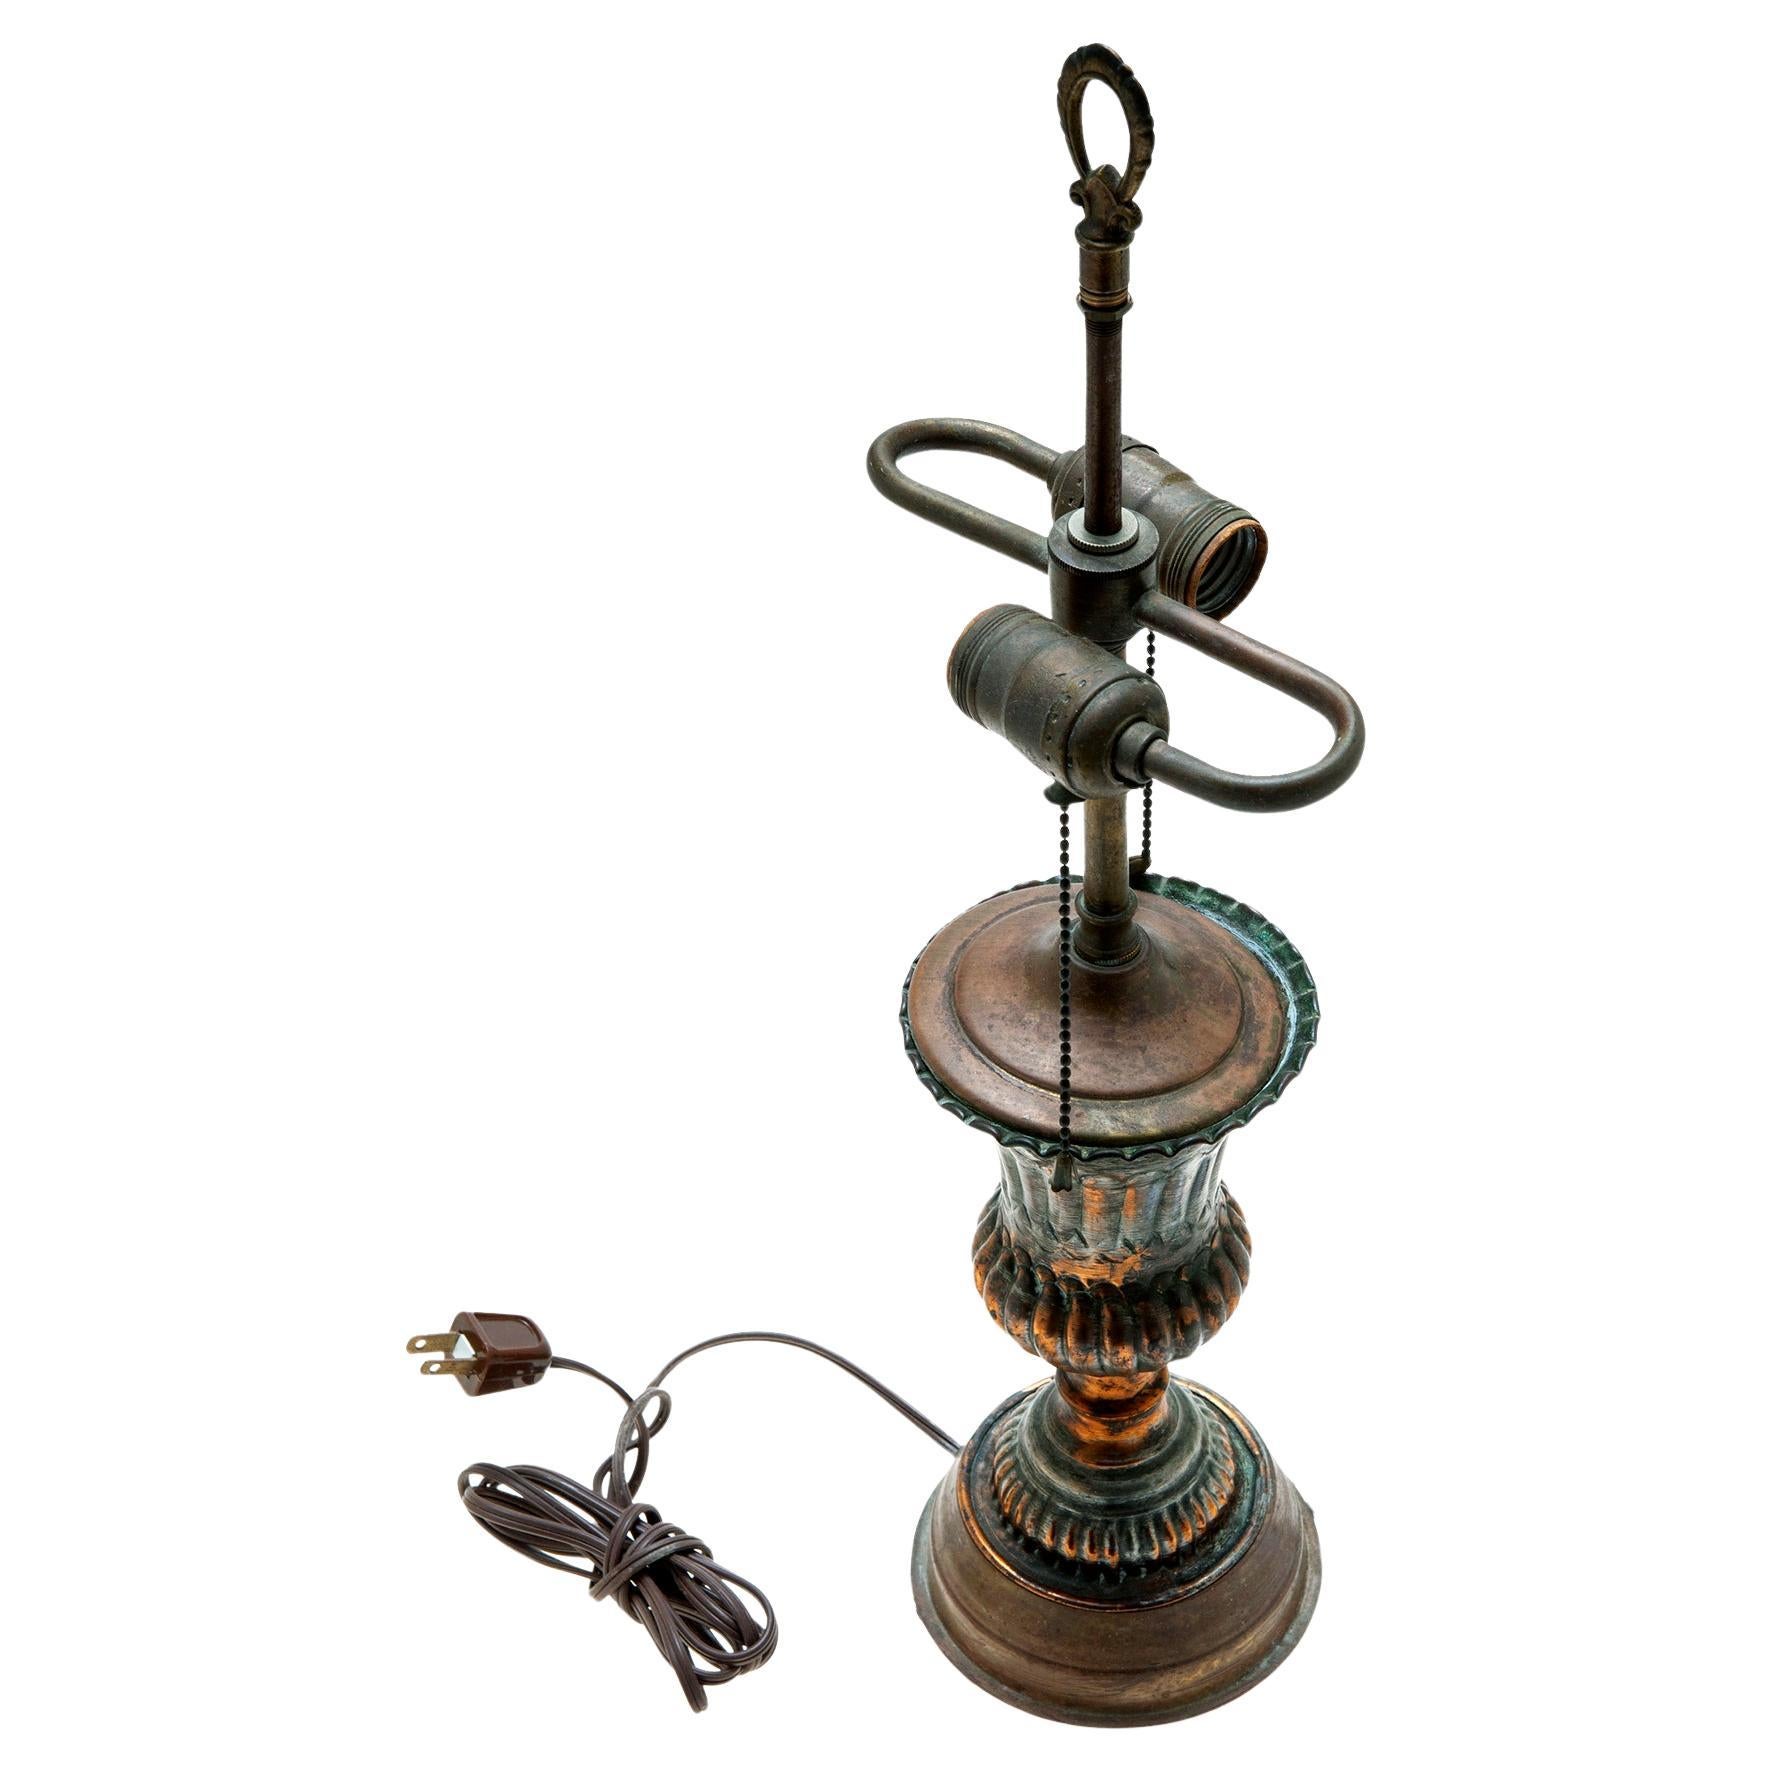 Lampe de table unique fabriquée à partir d'une urne persane en cuivre.
Le luminaire a été restauré et recâblé à l'aide de composants d'époque. 
